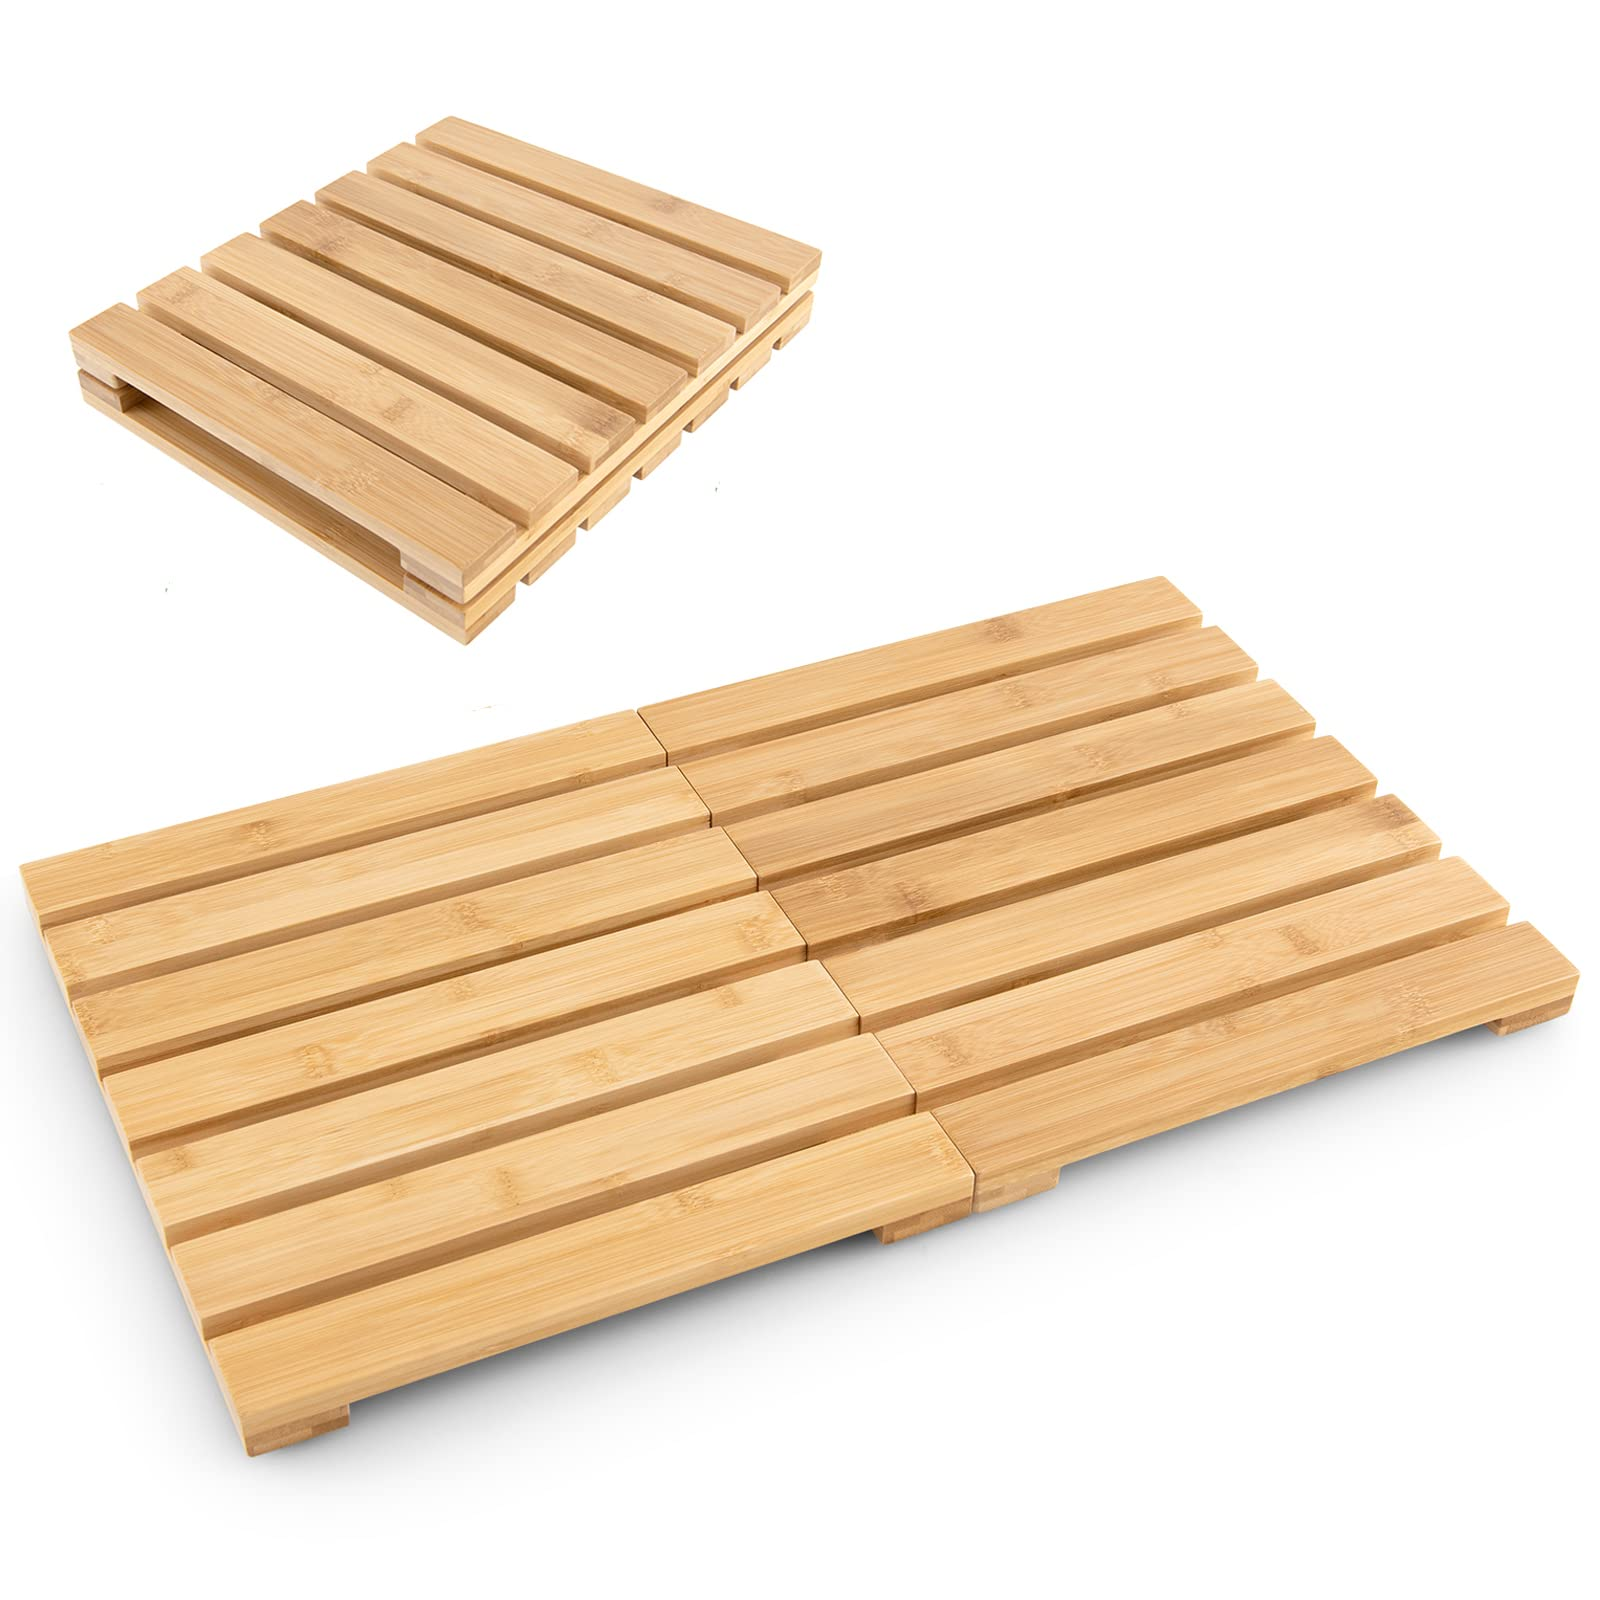 Giantex Bamboo Bath Mat, Foldable Non-Slip Wooden Shower Mat